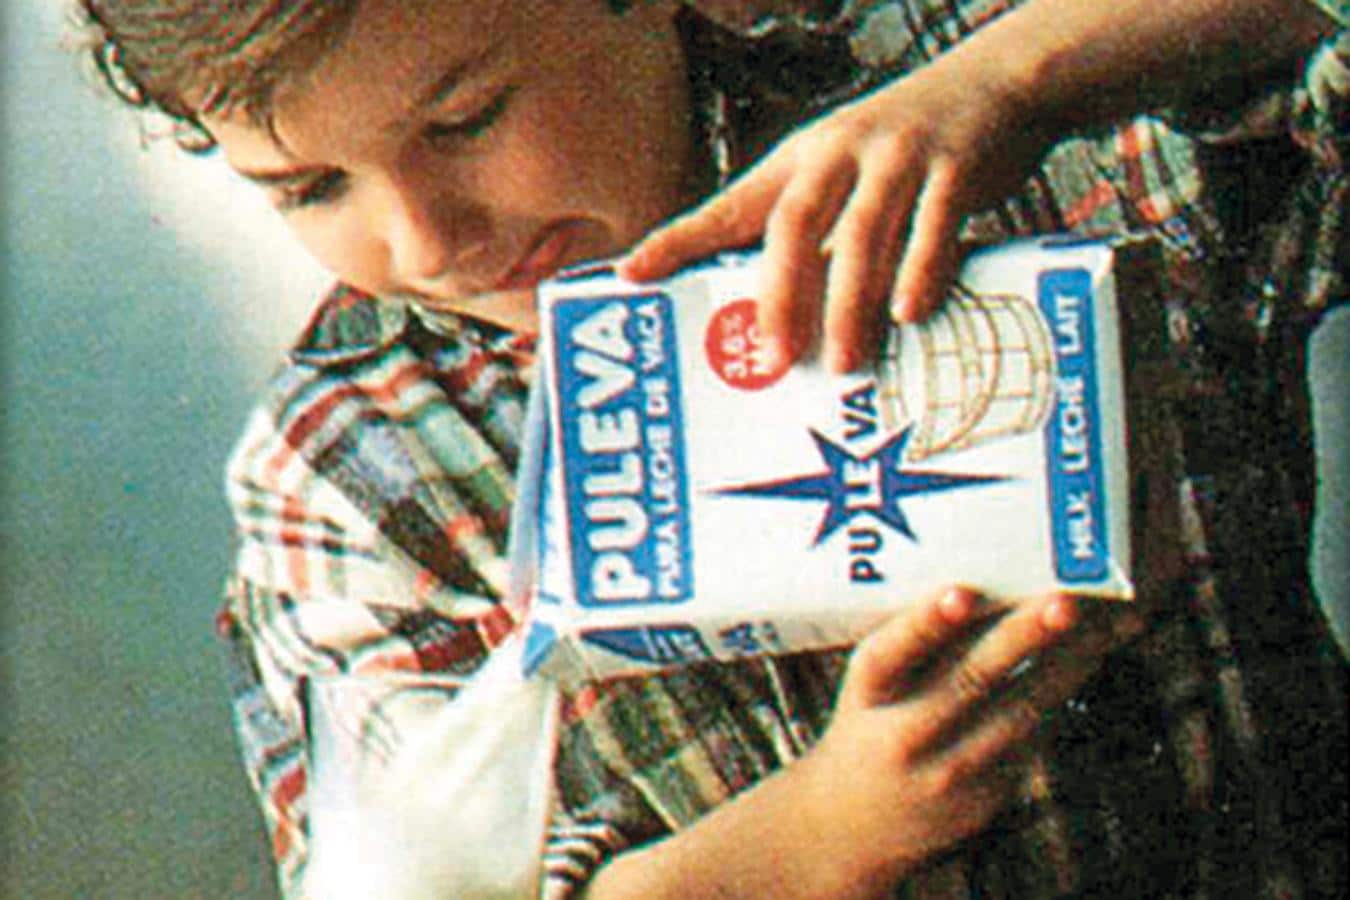 1986. PULEVA, PURA LECHE DE VACA. La exitosa campaña publicitaria, apoyada en el viejo lema “Pura leche de vaca”, consiguió aumentar las ventas de leche clásica un 10%.